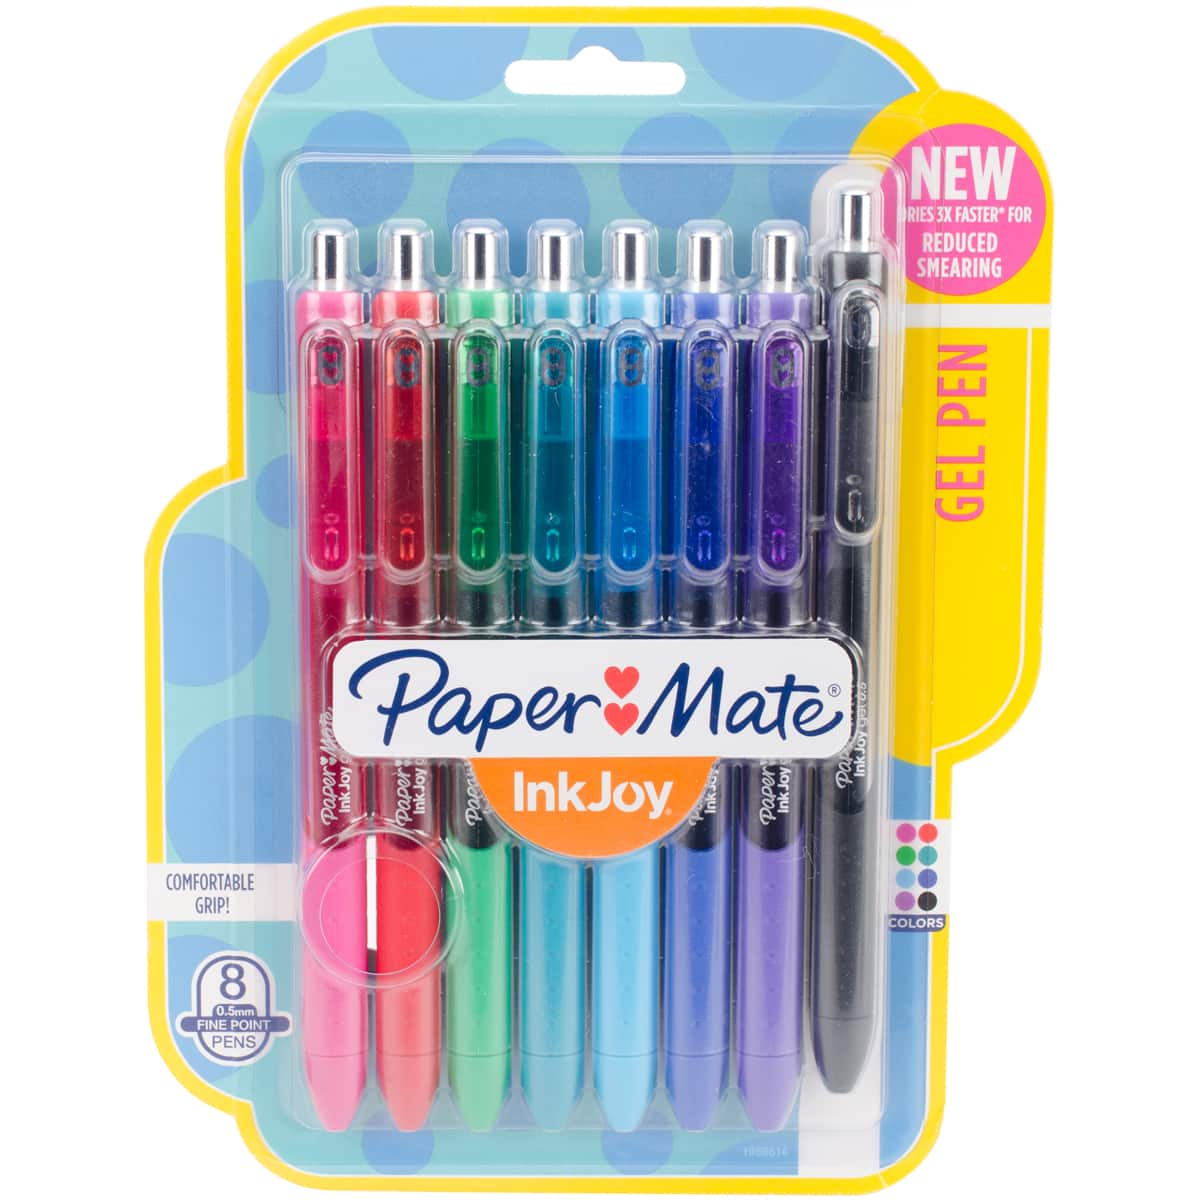 Paper Mate Inkjoy Gel Pen Sets